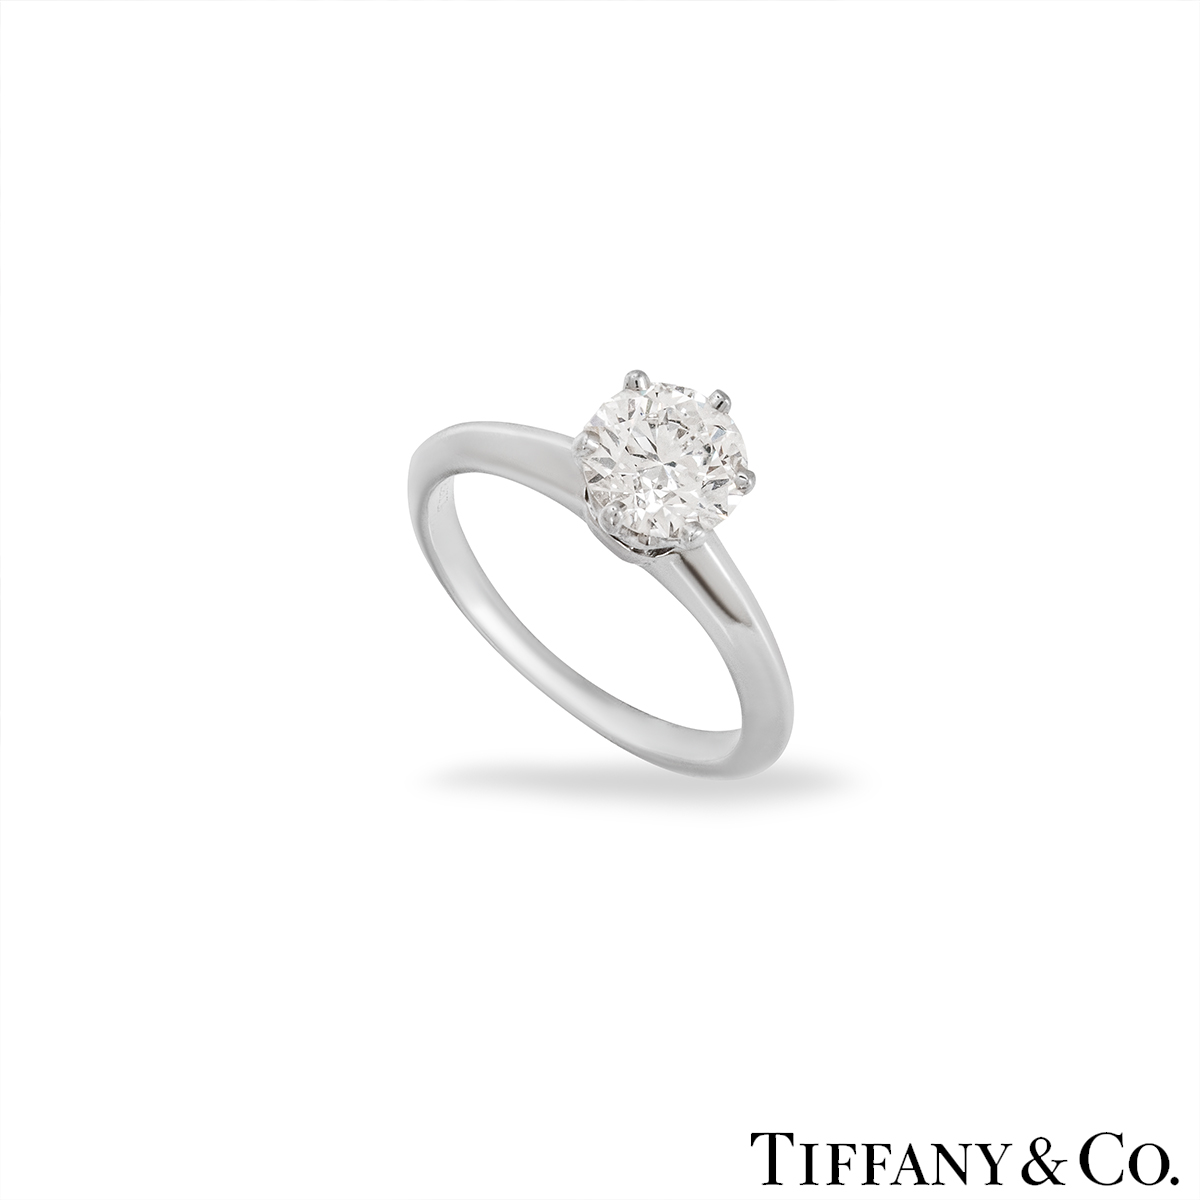 Tiffany & Co. Round Brilliant Cut Diamond Ring 1.01ct E/VS1